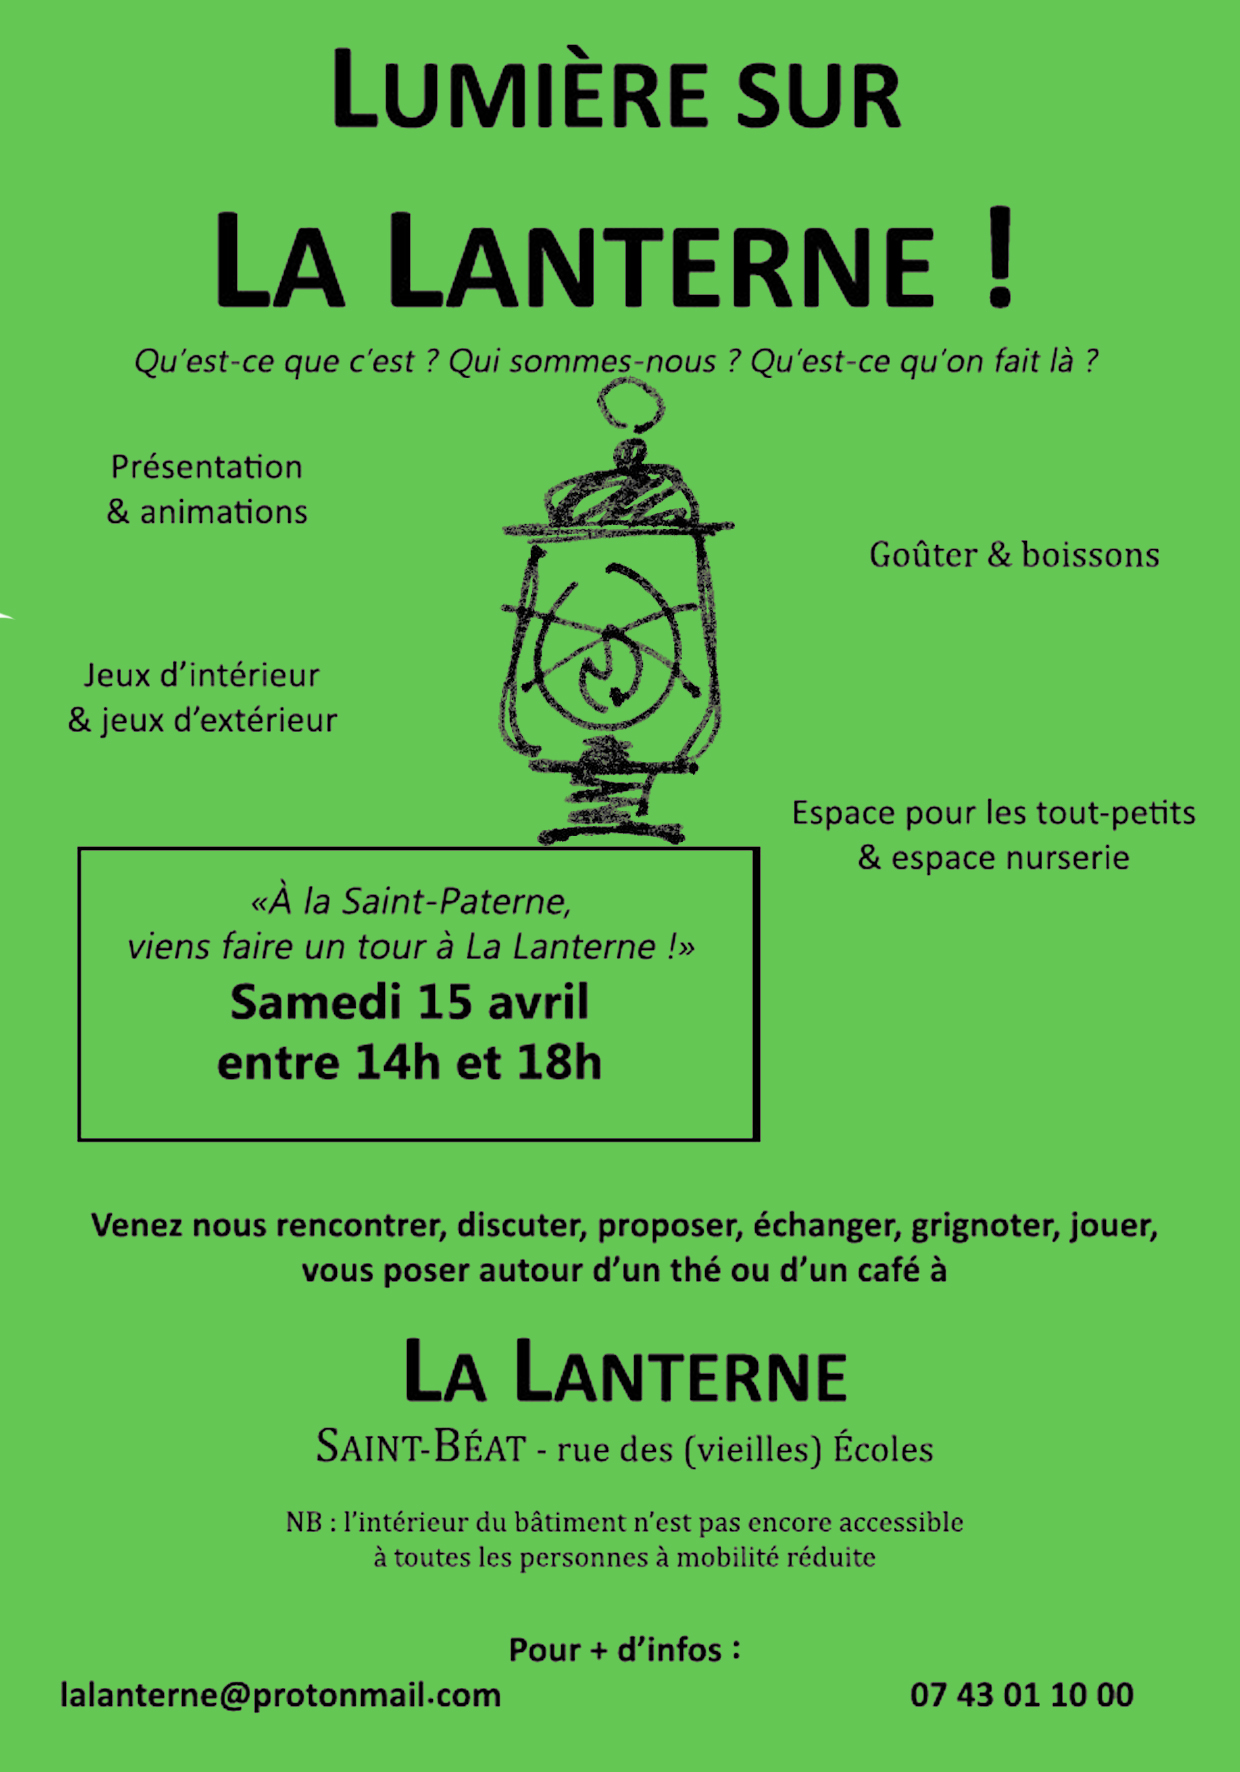 Samedi 15 avril / Invitation à rencontrer La Lanterne aux anciennes écoles de Saint-Béat